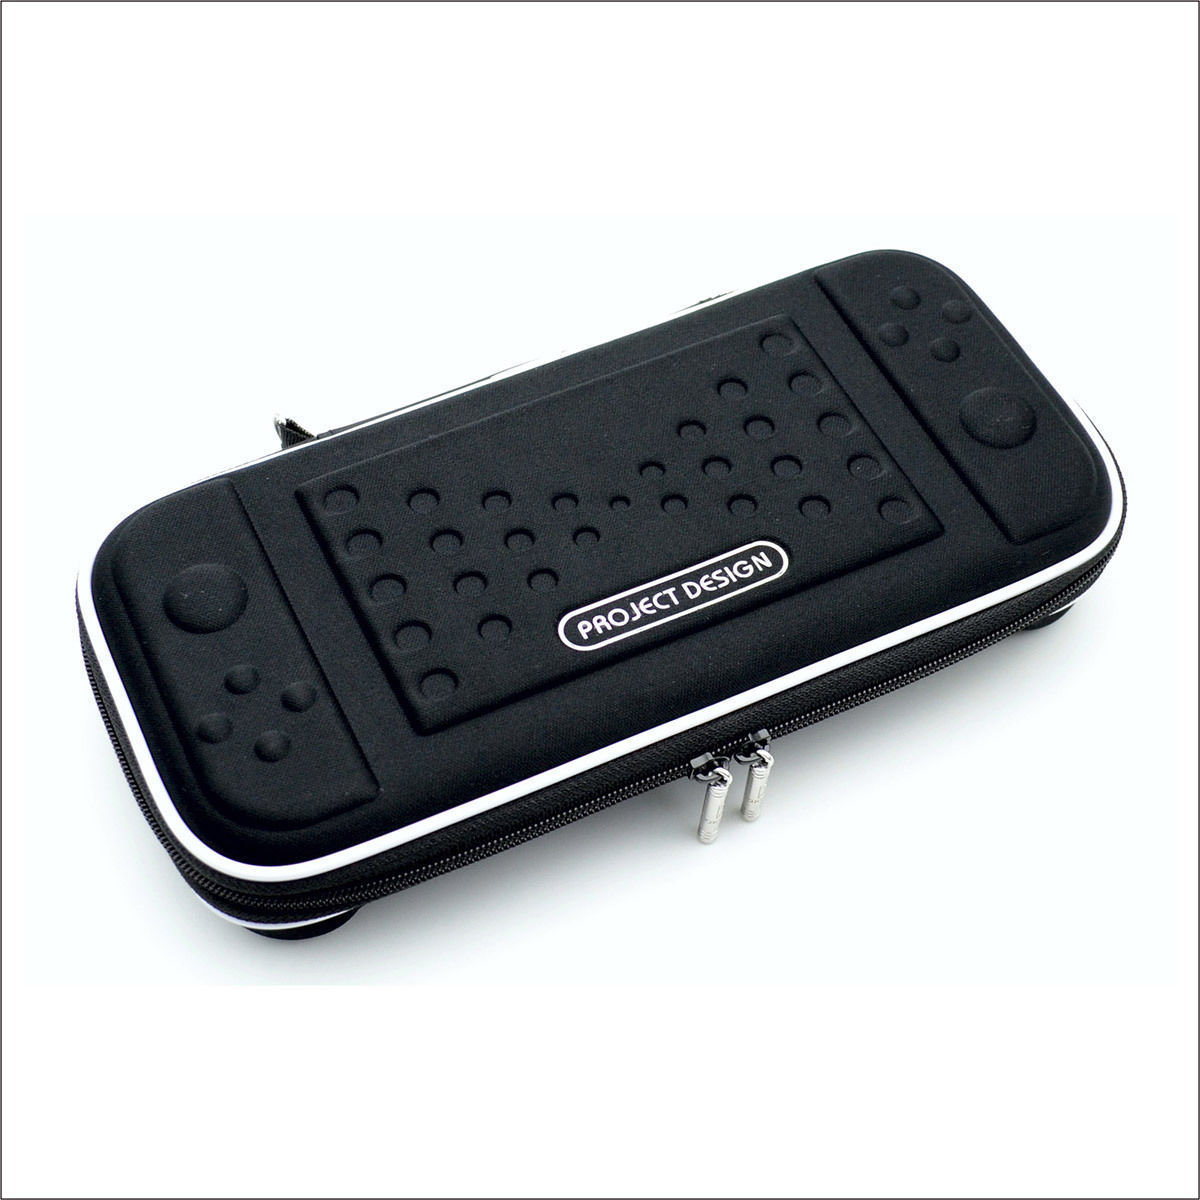 OSTENT Beschermende Draagtas Shell Hard Case Pouch Pocket voor Nintendo Switch Console